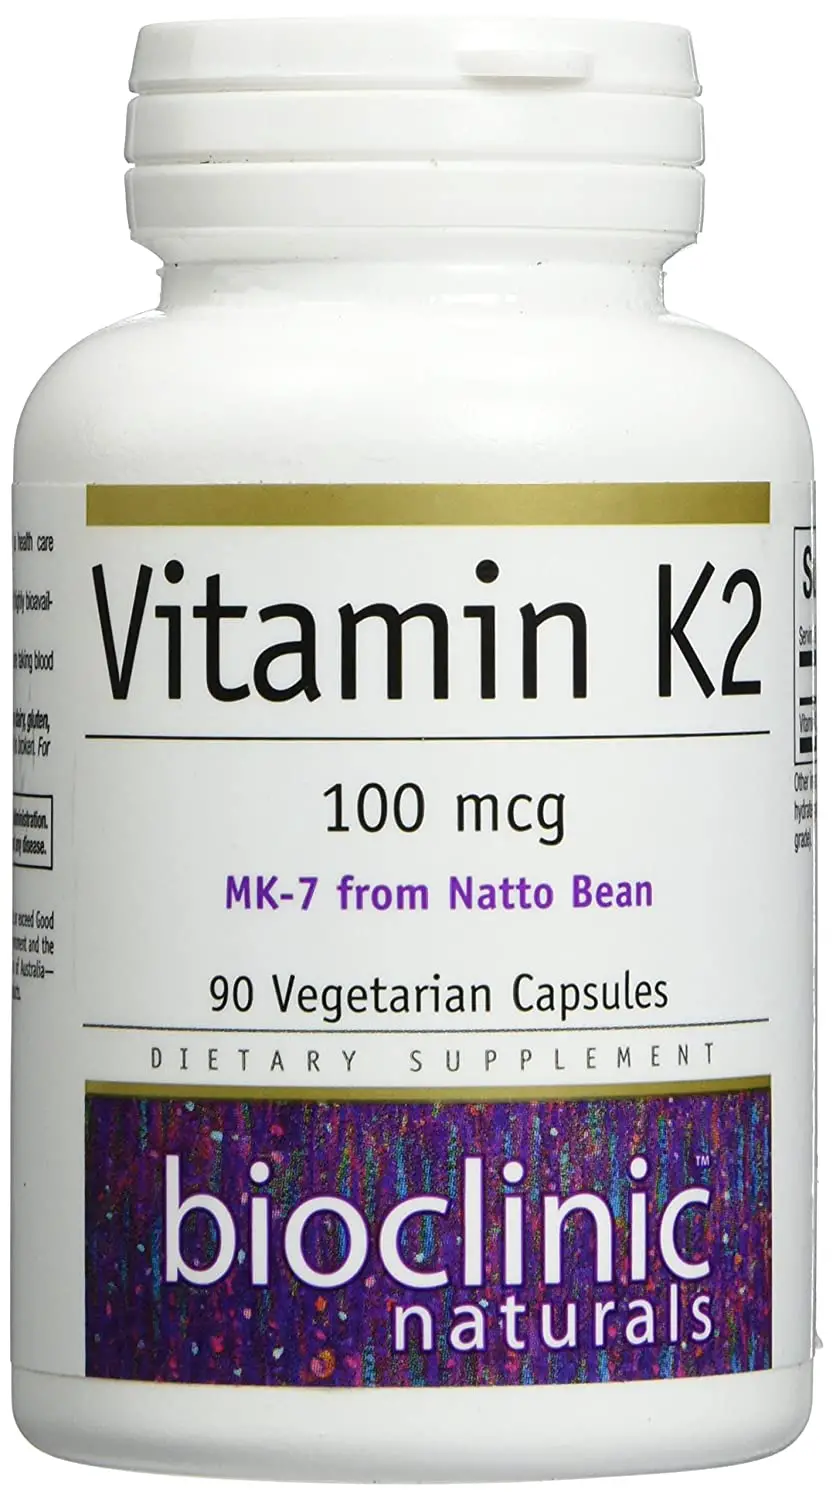 Best Where To Buy Vitamin K2 In Canada